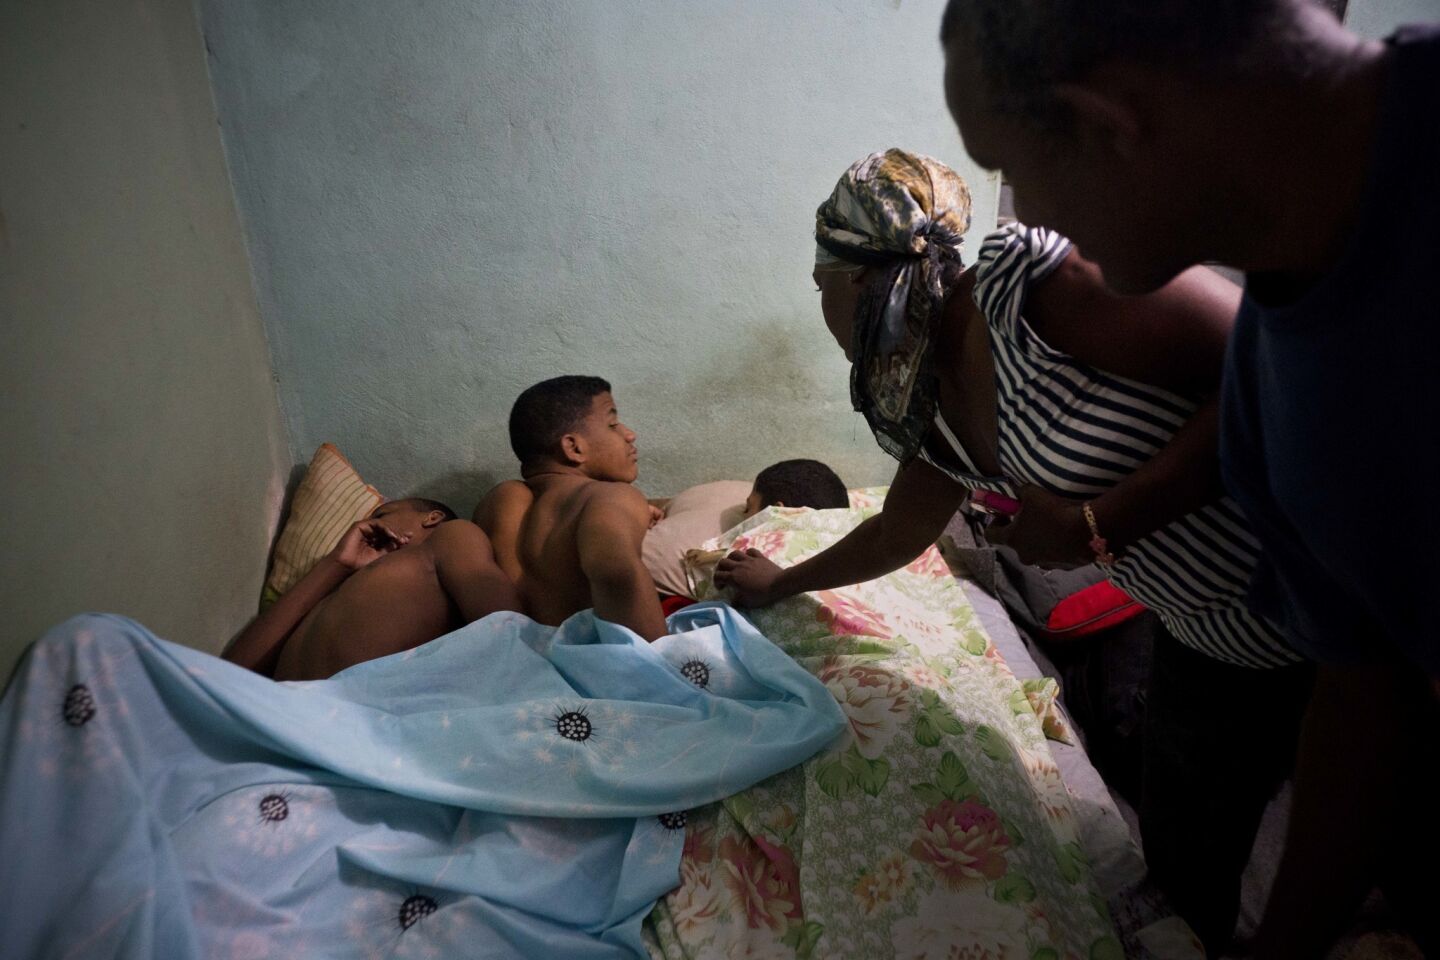 La pareja formada por Leandro Heredia Marrero (d) y su esposa Leticia despiertan a tres jóvenes luchadores que se alojan en su casa para un torneo amateur organizado por vecinos del vecindario de Chicharrones, en Santiago, Cuba.